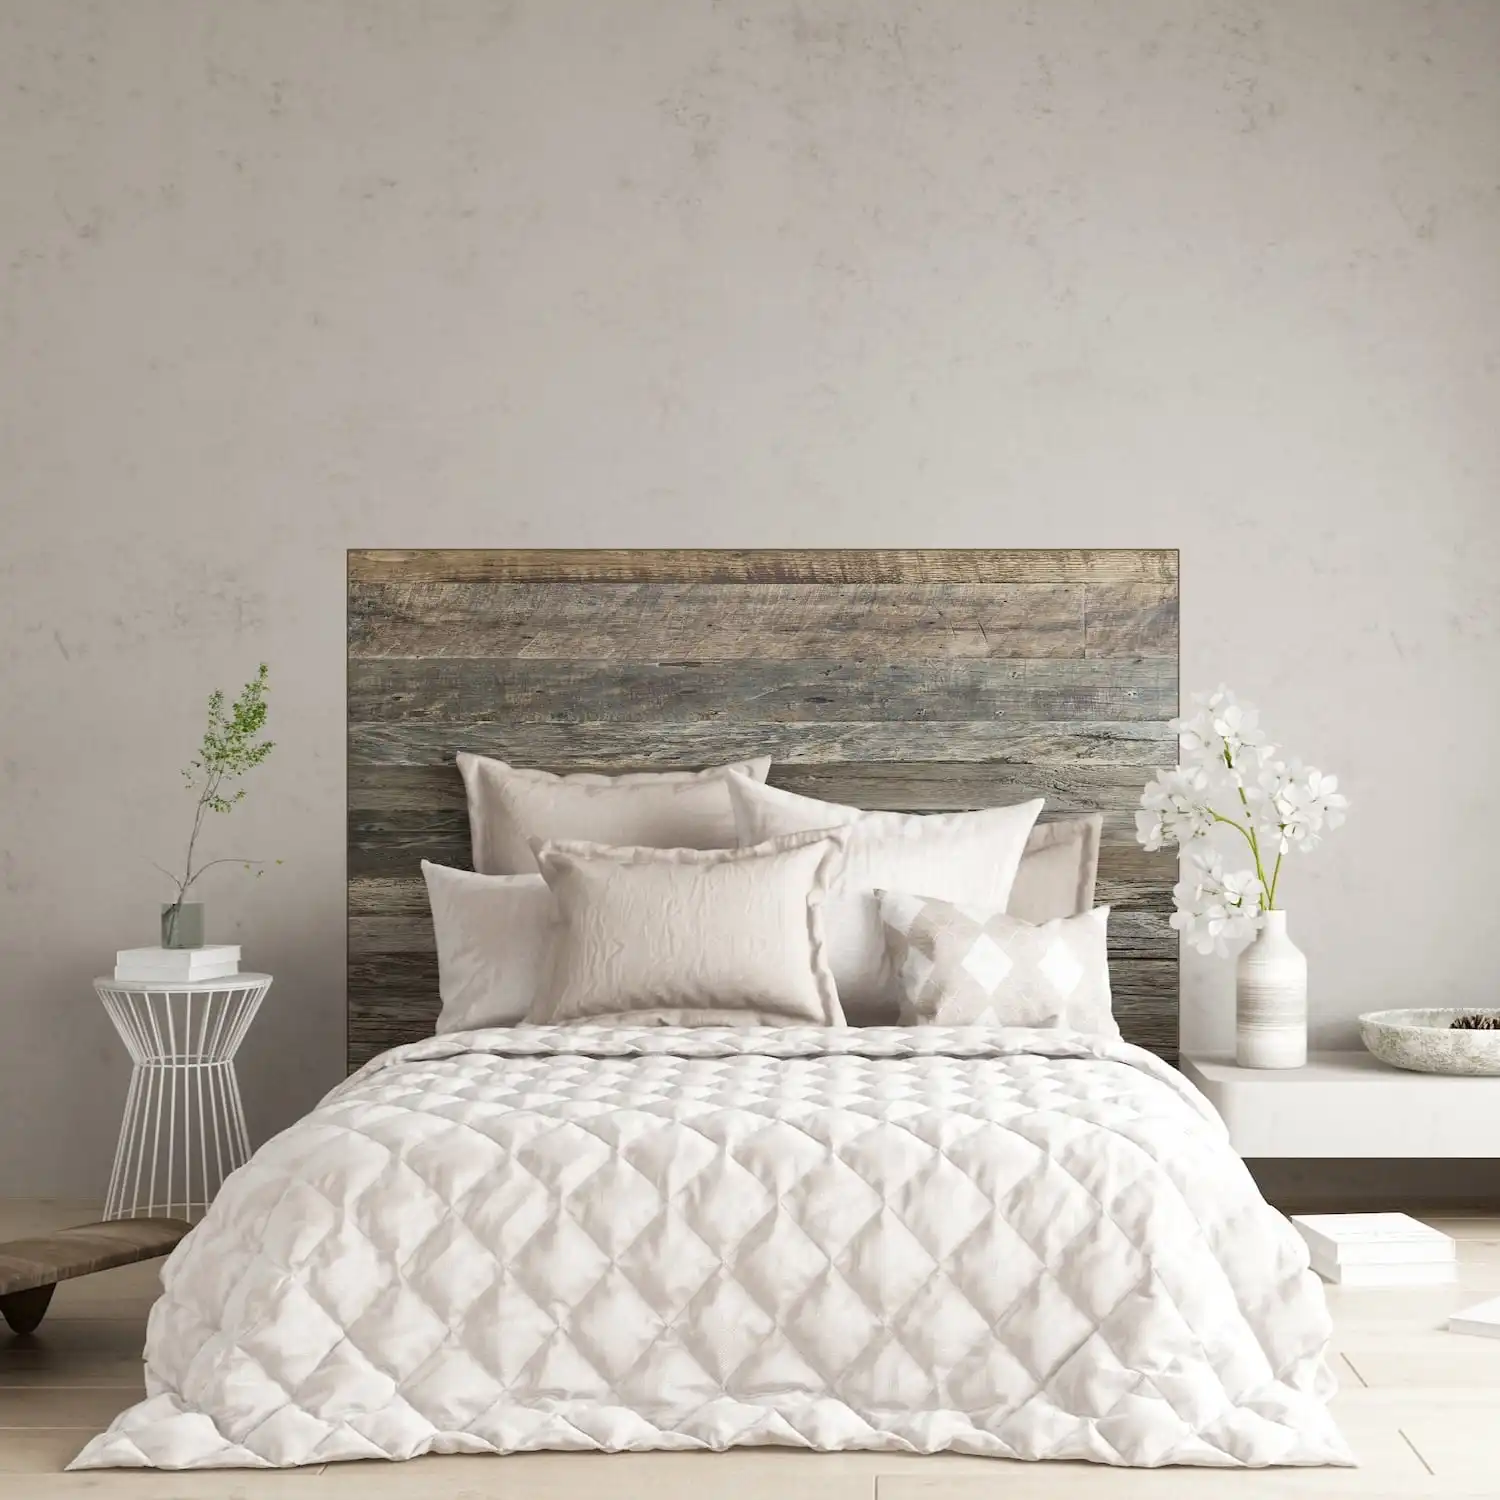  Une chambre moderne dotée d'une couette matelassée sur un lit avec une tête de lit en bois rustique, complétée par un décor minimaliste et une palette de couleurs neutres. 